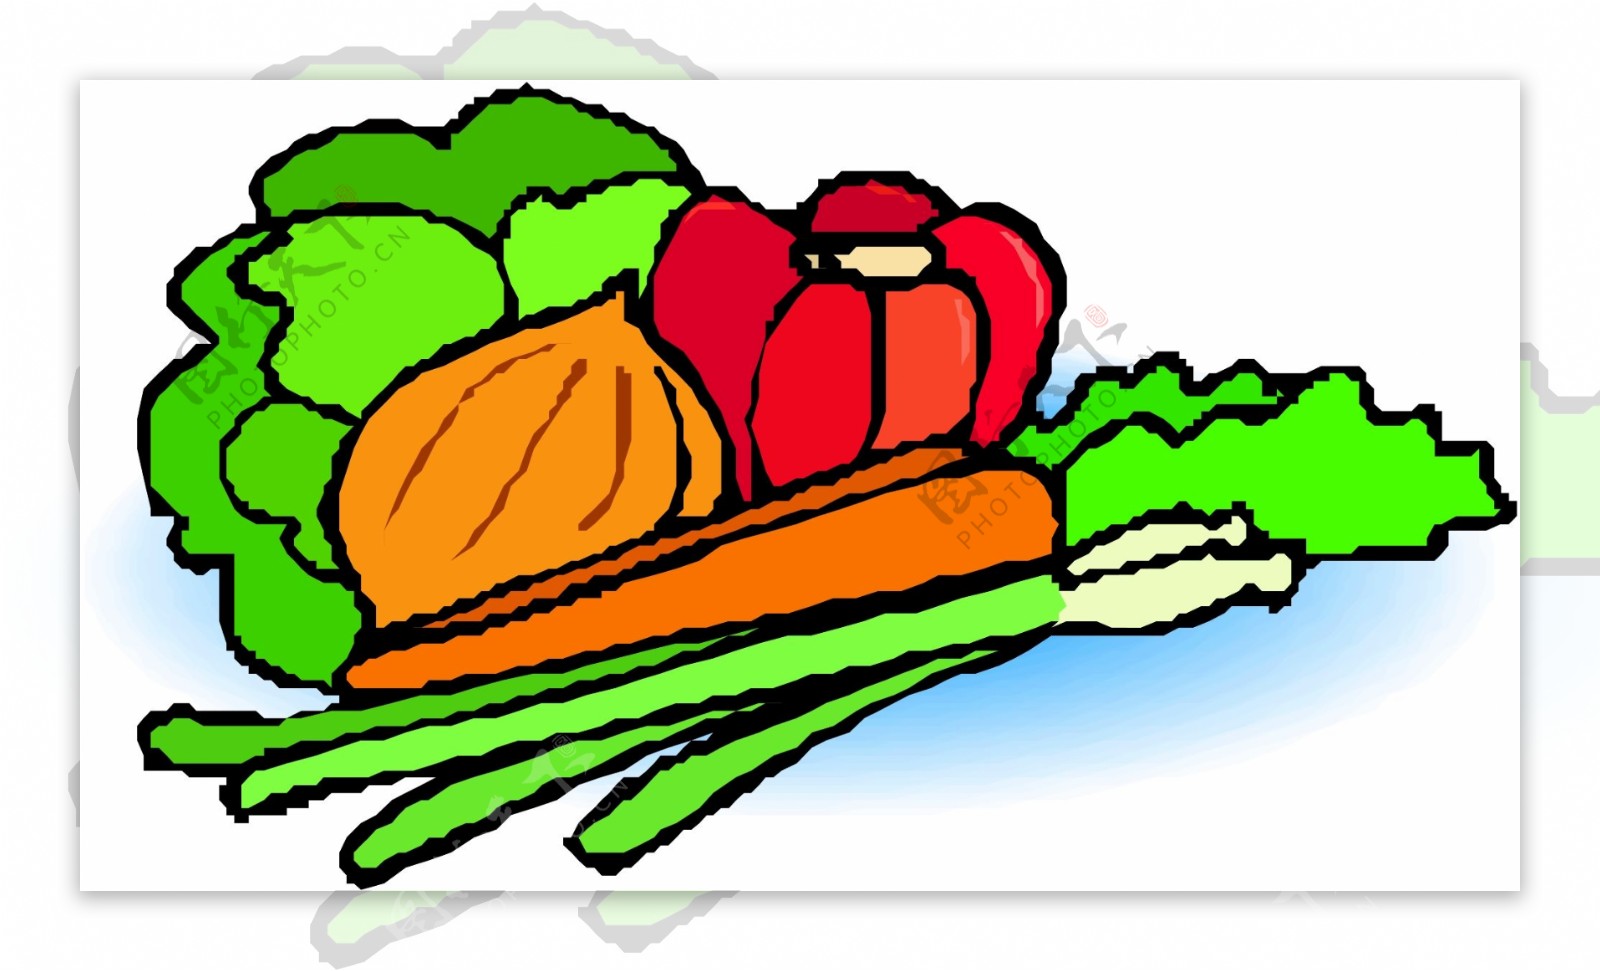 蔬菜水果水果大全野果肉类海鲜卡通漫画